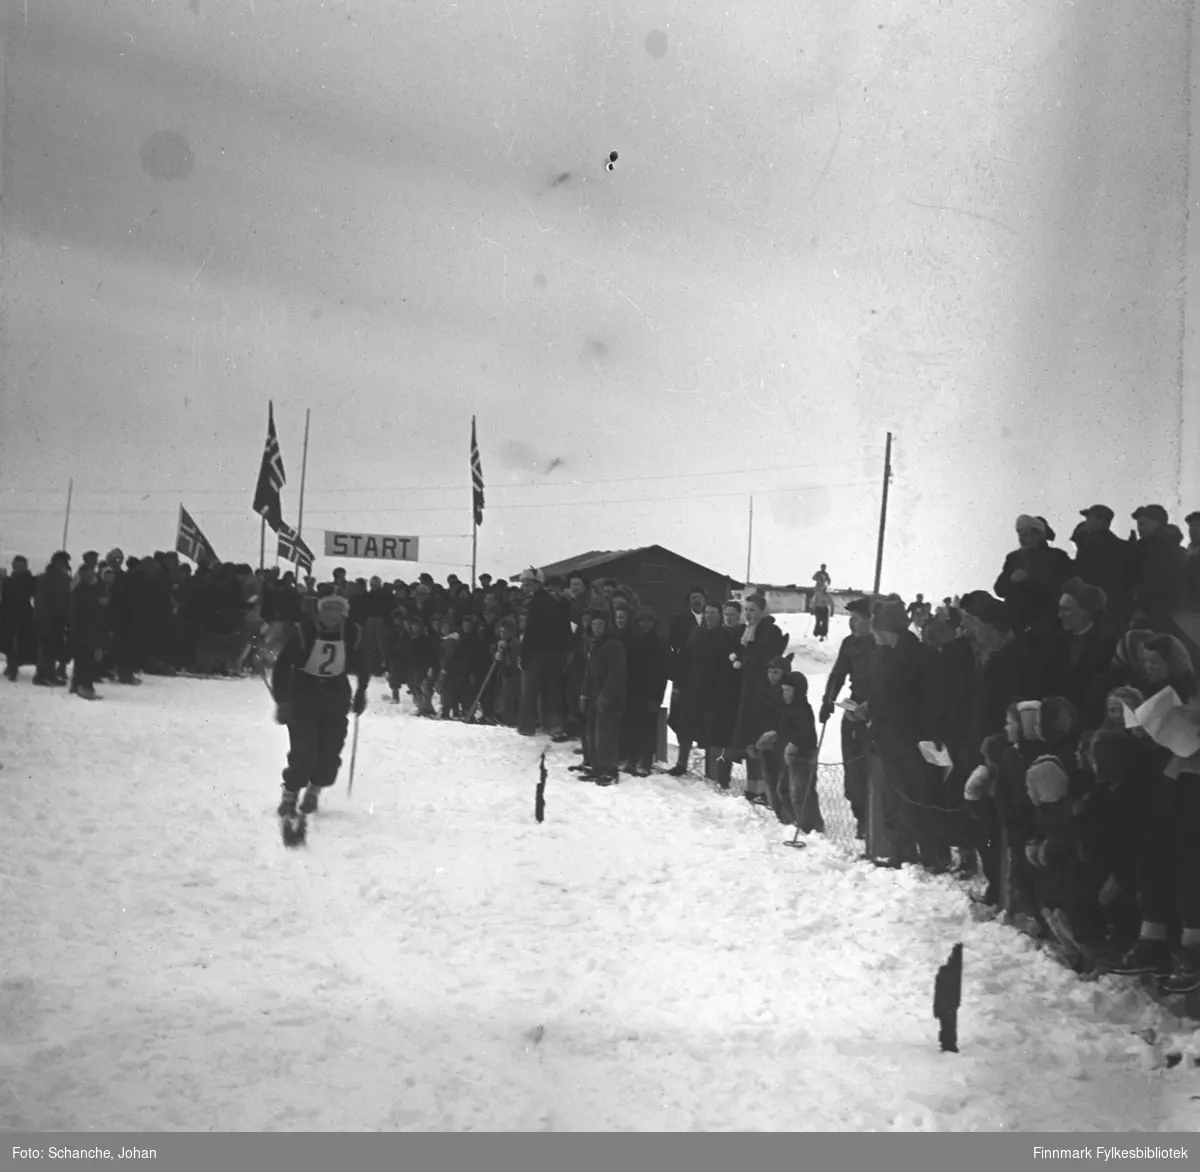 Fra kretsrennet på ski, 1946 i Vadsø. Beste finnmarking på 30 km.langrenn, Ole A. Mathisen fra Nesseby.